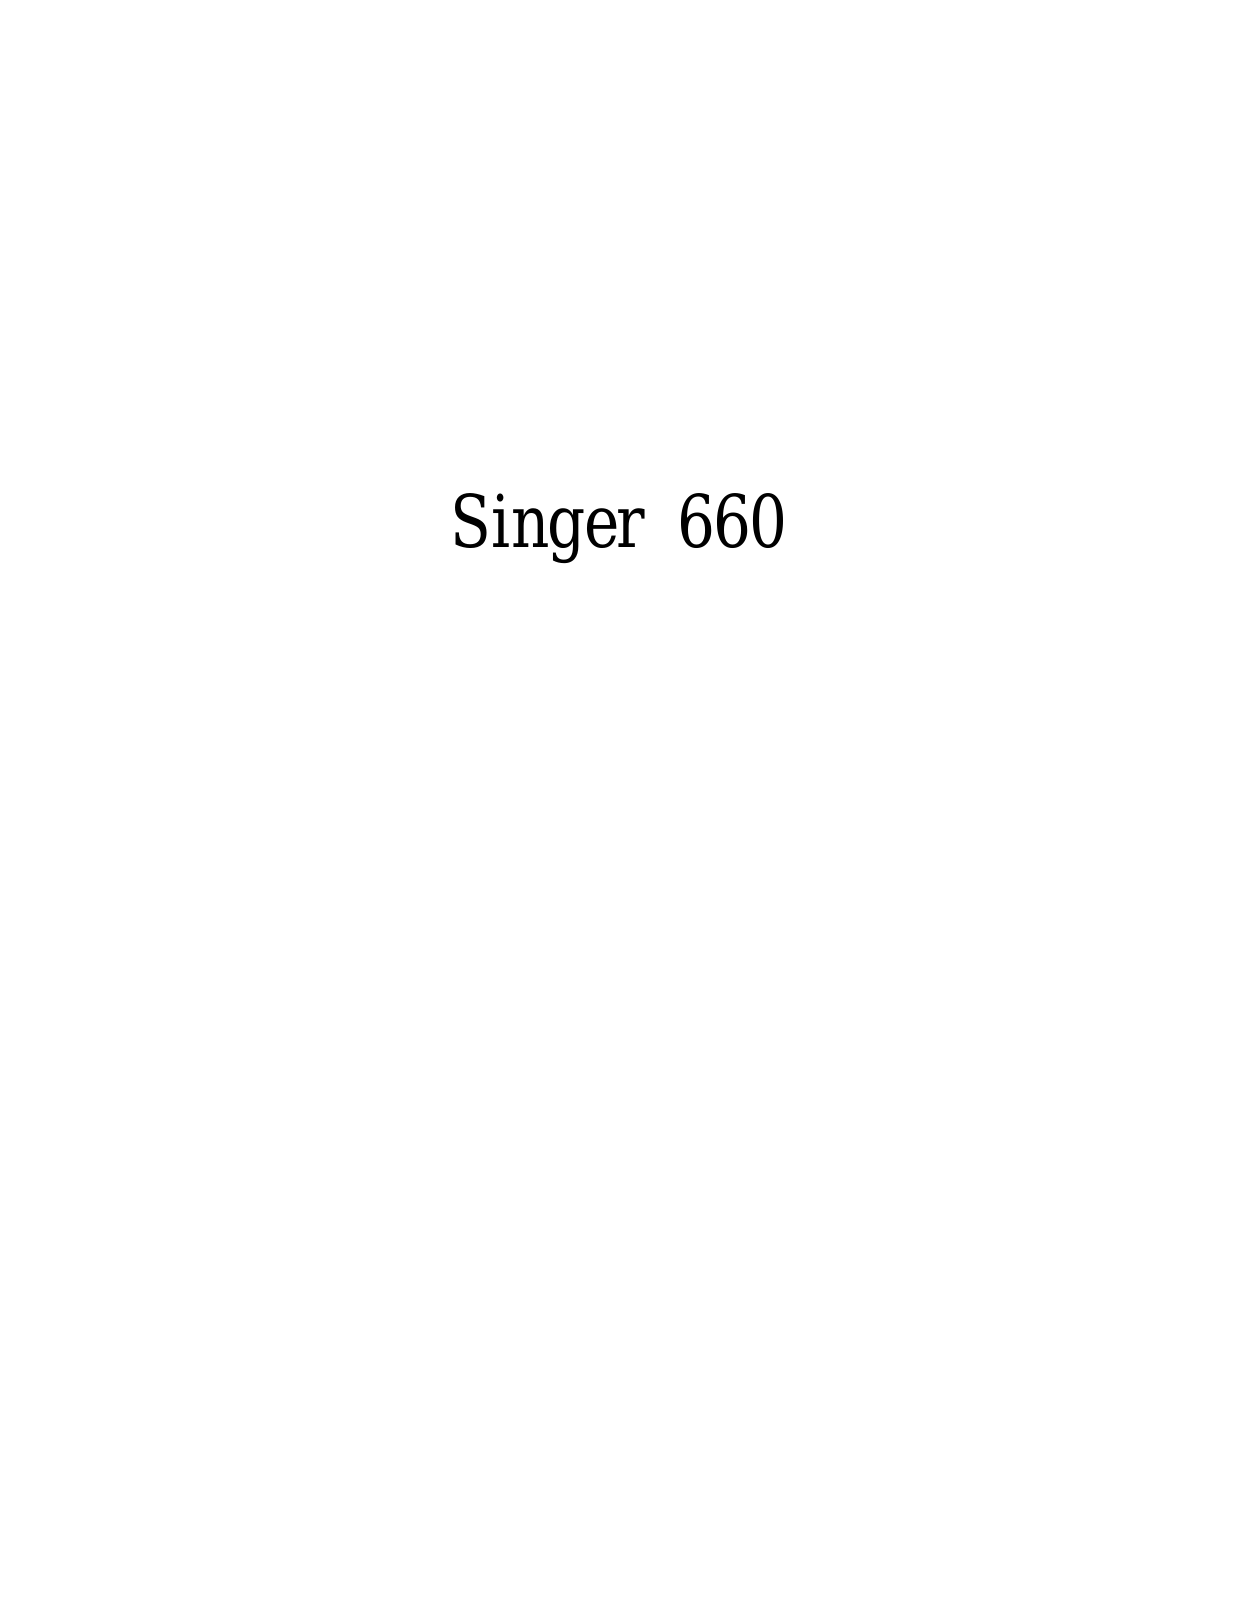 SINGER 660 Parts List